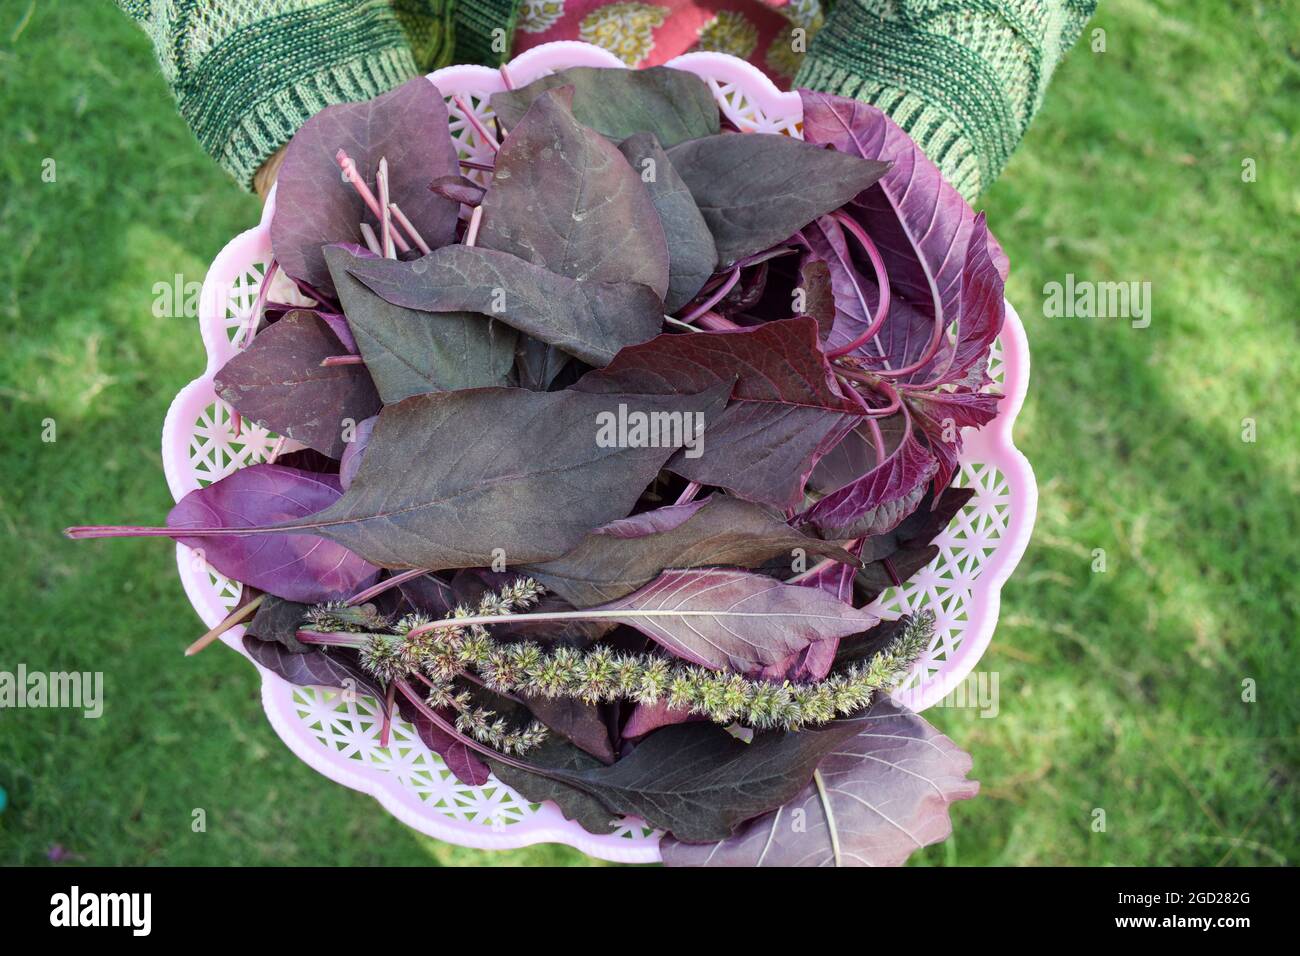 Panier de conservation pour femme rempli de légumes à feuilles d'épinards rouges biologiques. Cueilli à la main cultivé en Inde Asie. Banque D'Images